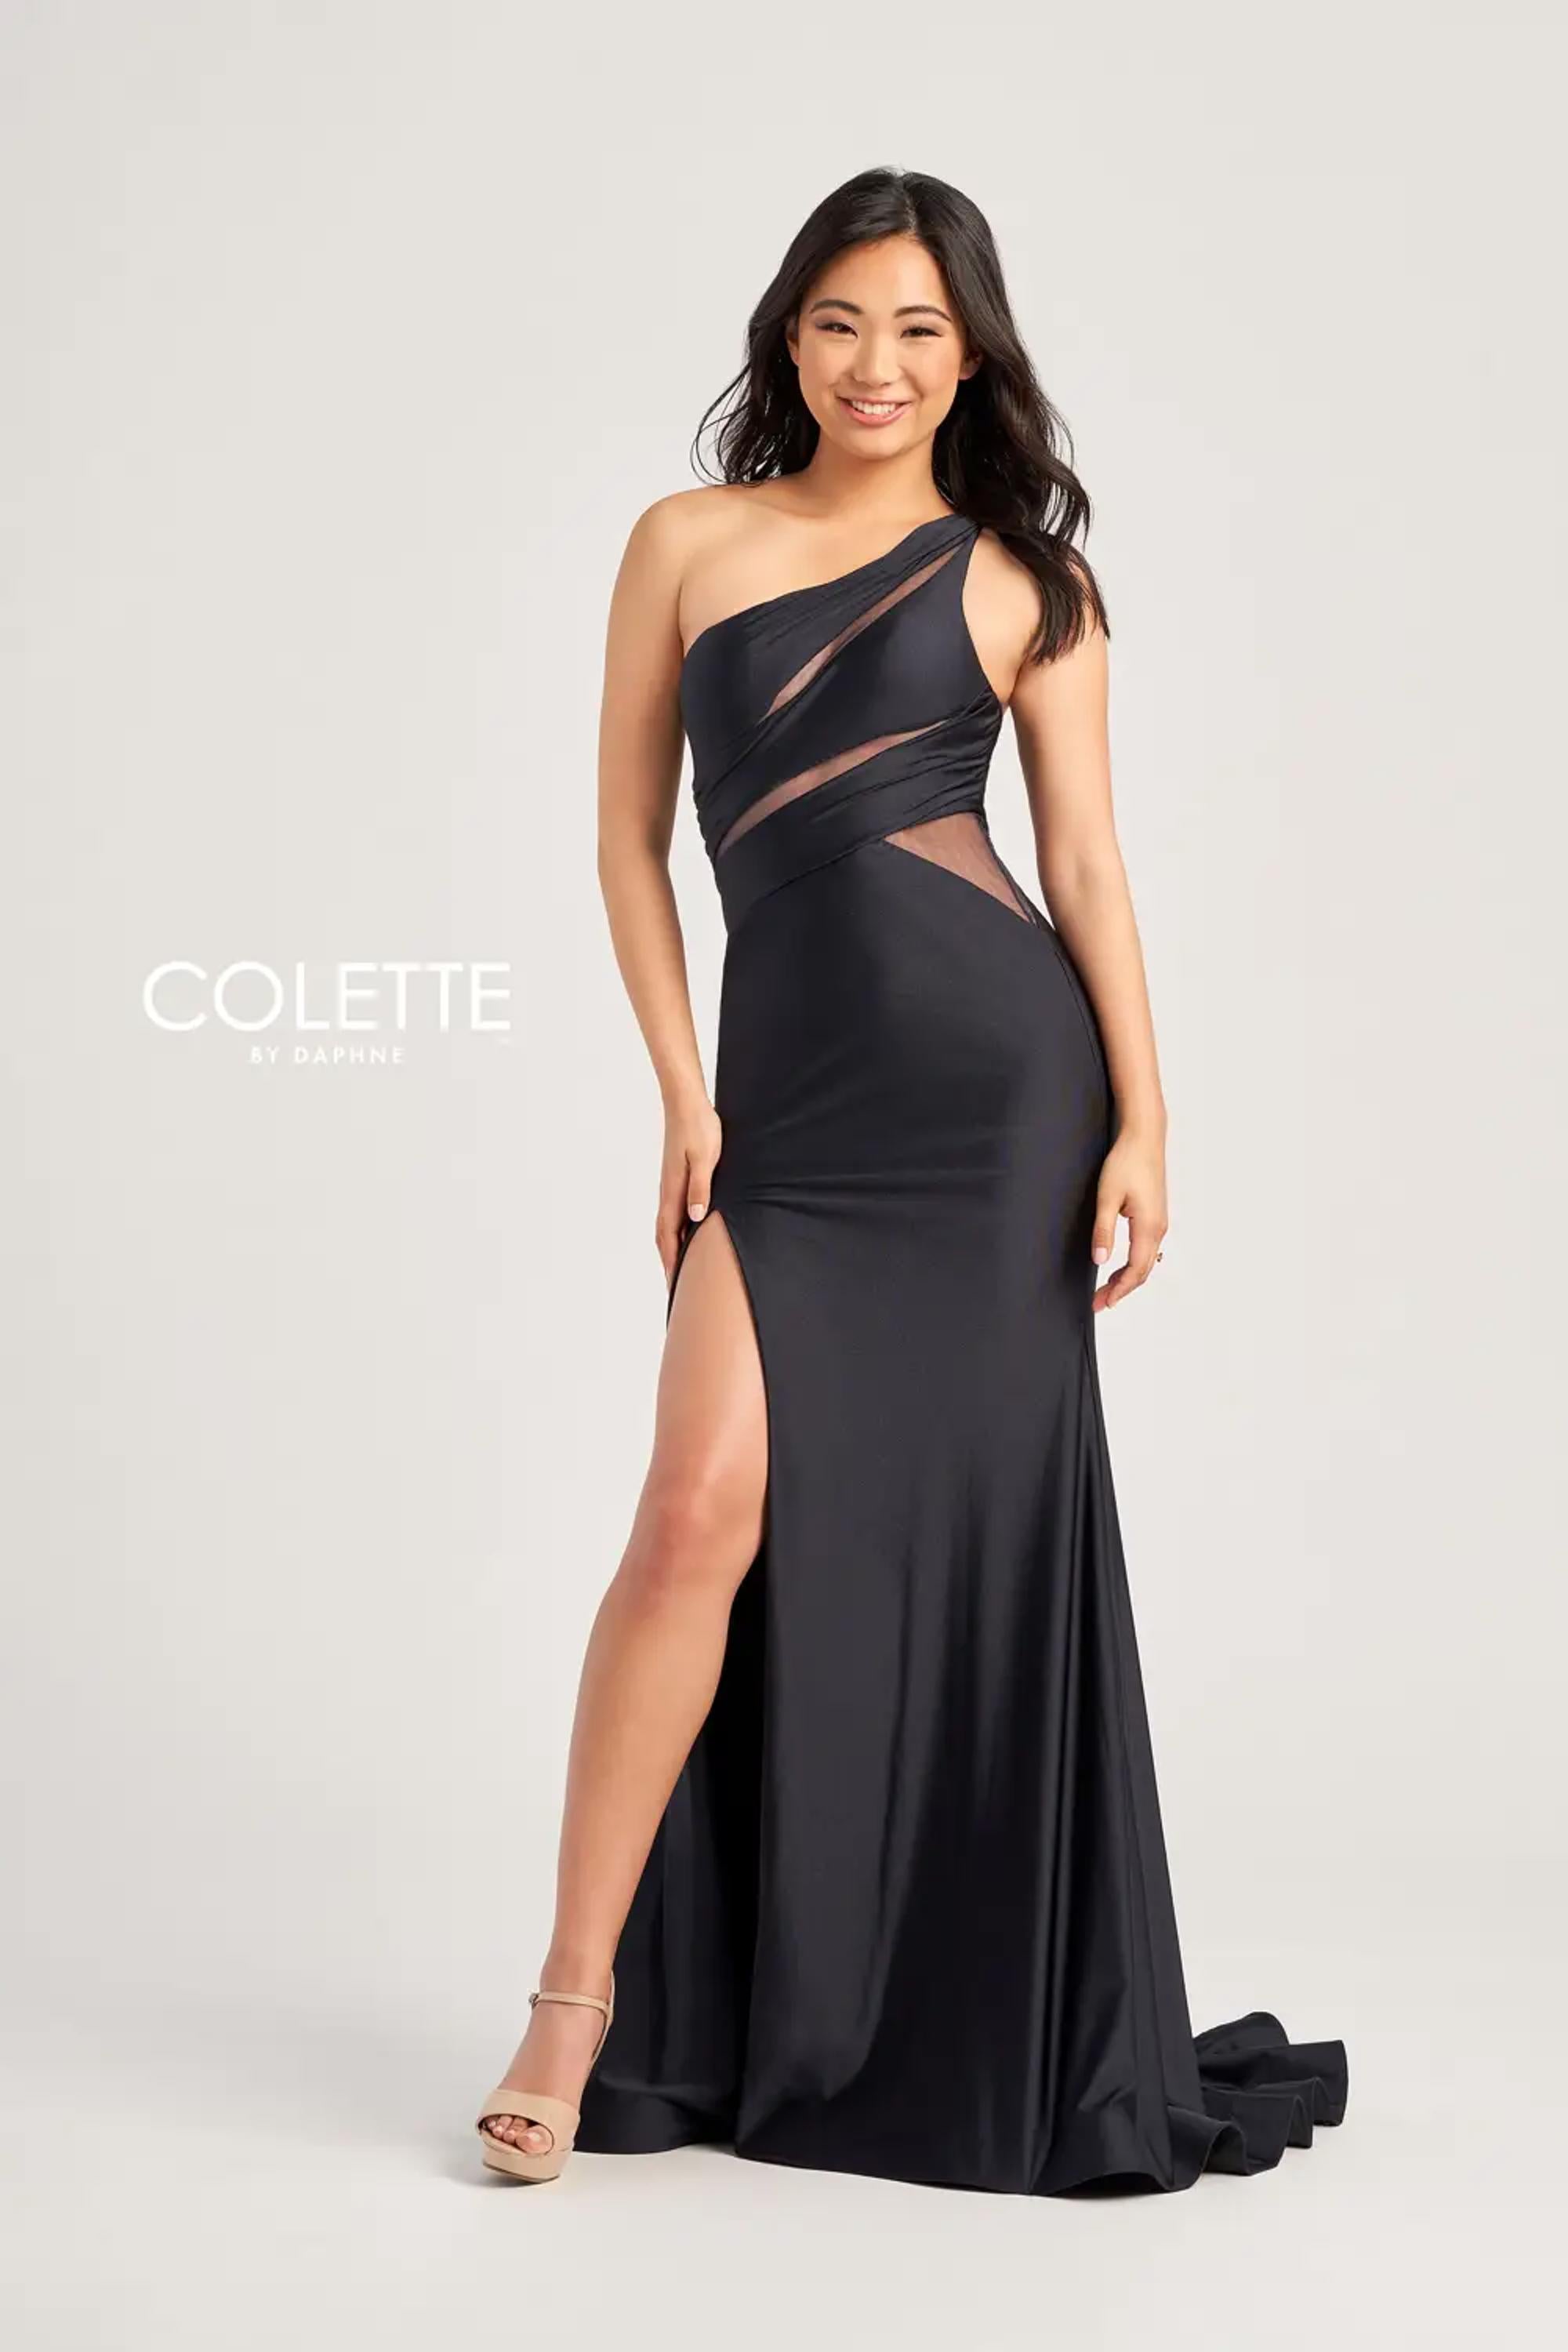 Colette CL5207